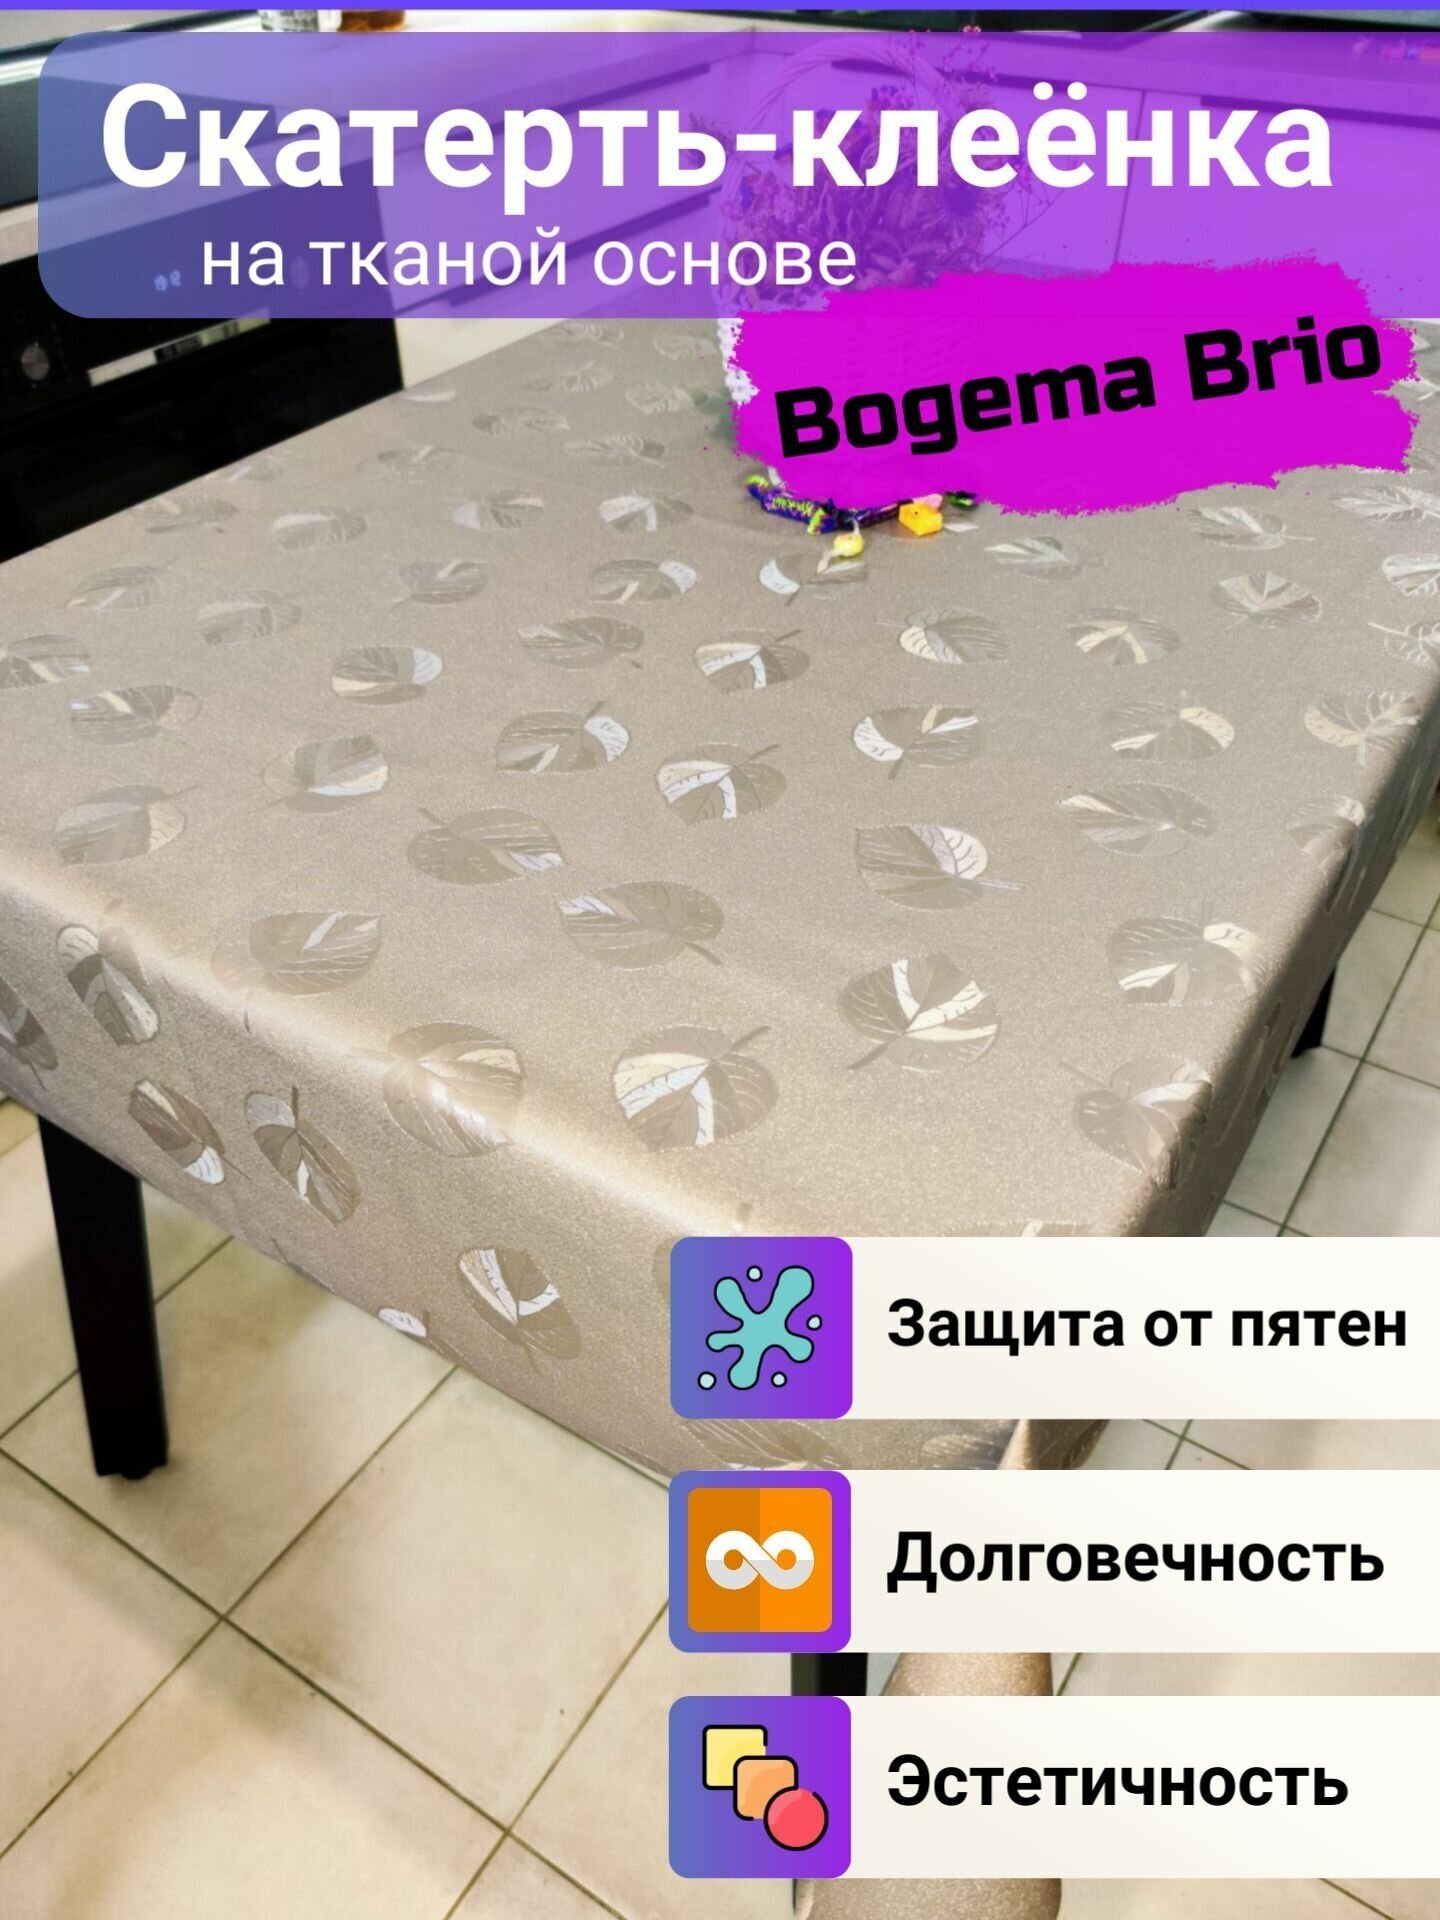 Скатерть декоративная Bogema Brio на тканой основе 100x140 см.